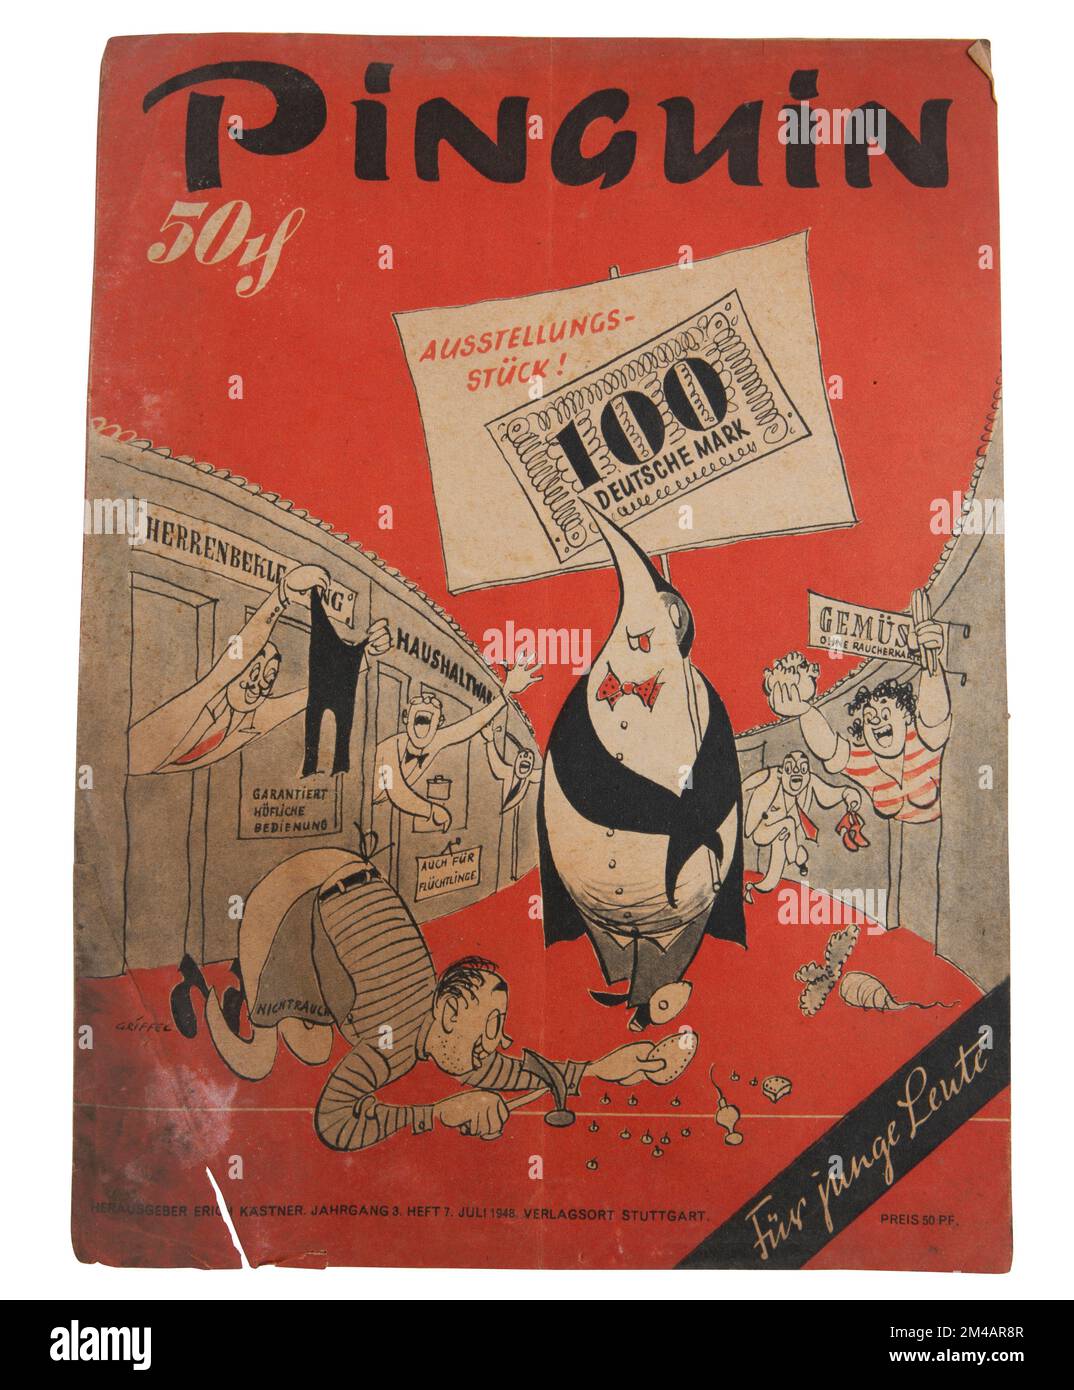 Piguin, Zeitschrift von Erich Kästner en el año 1948 Foto de stock